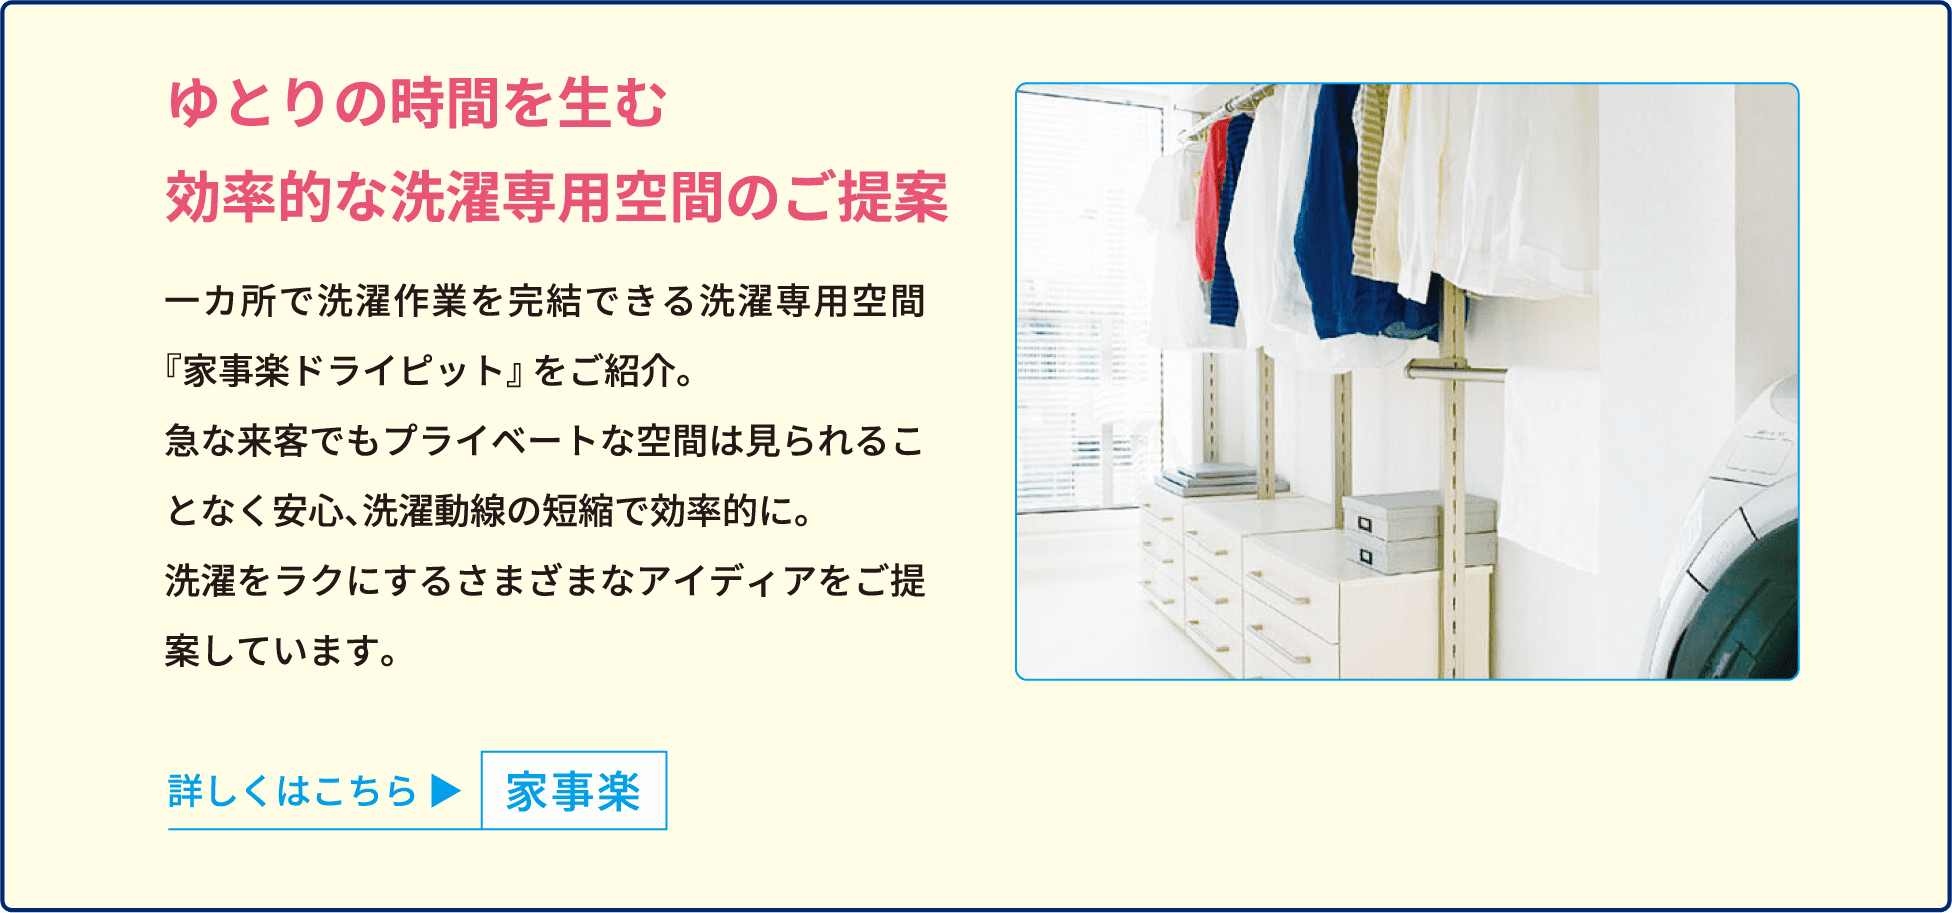 ゆとりの時間を生む効率的な洗濯専用空間のご提案